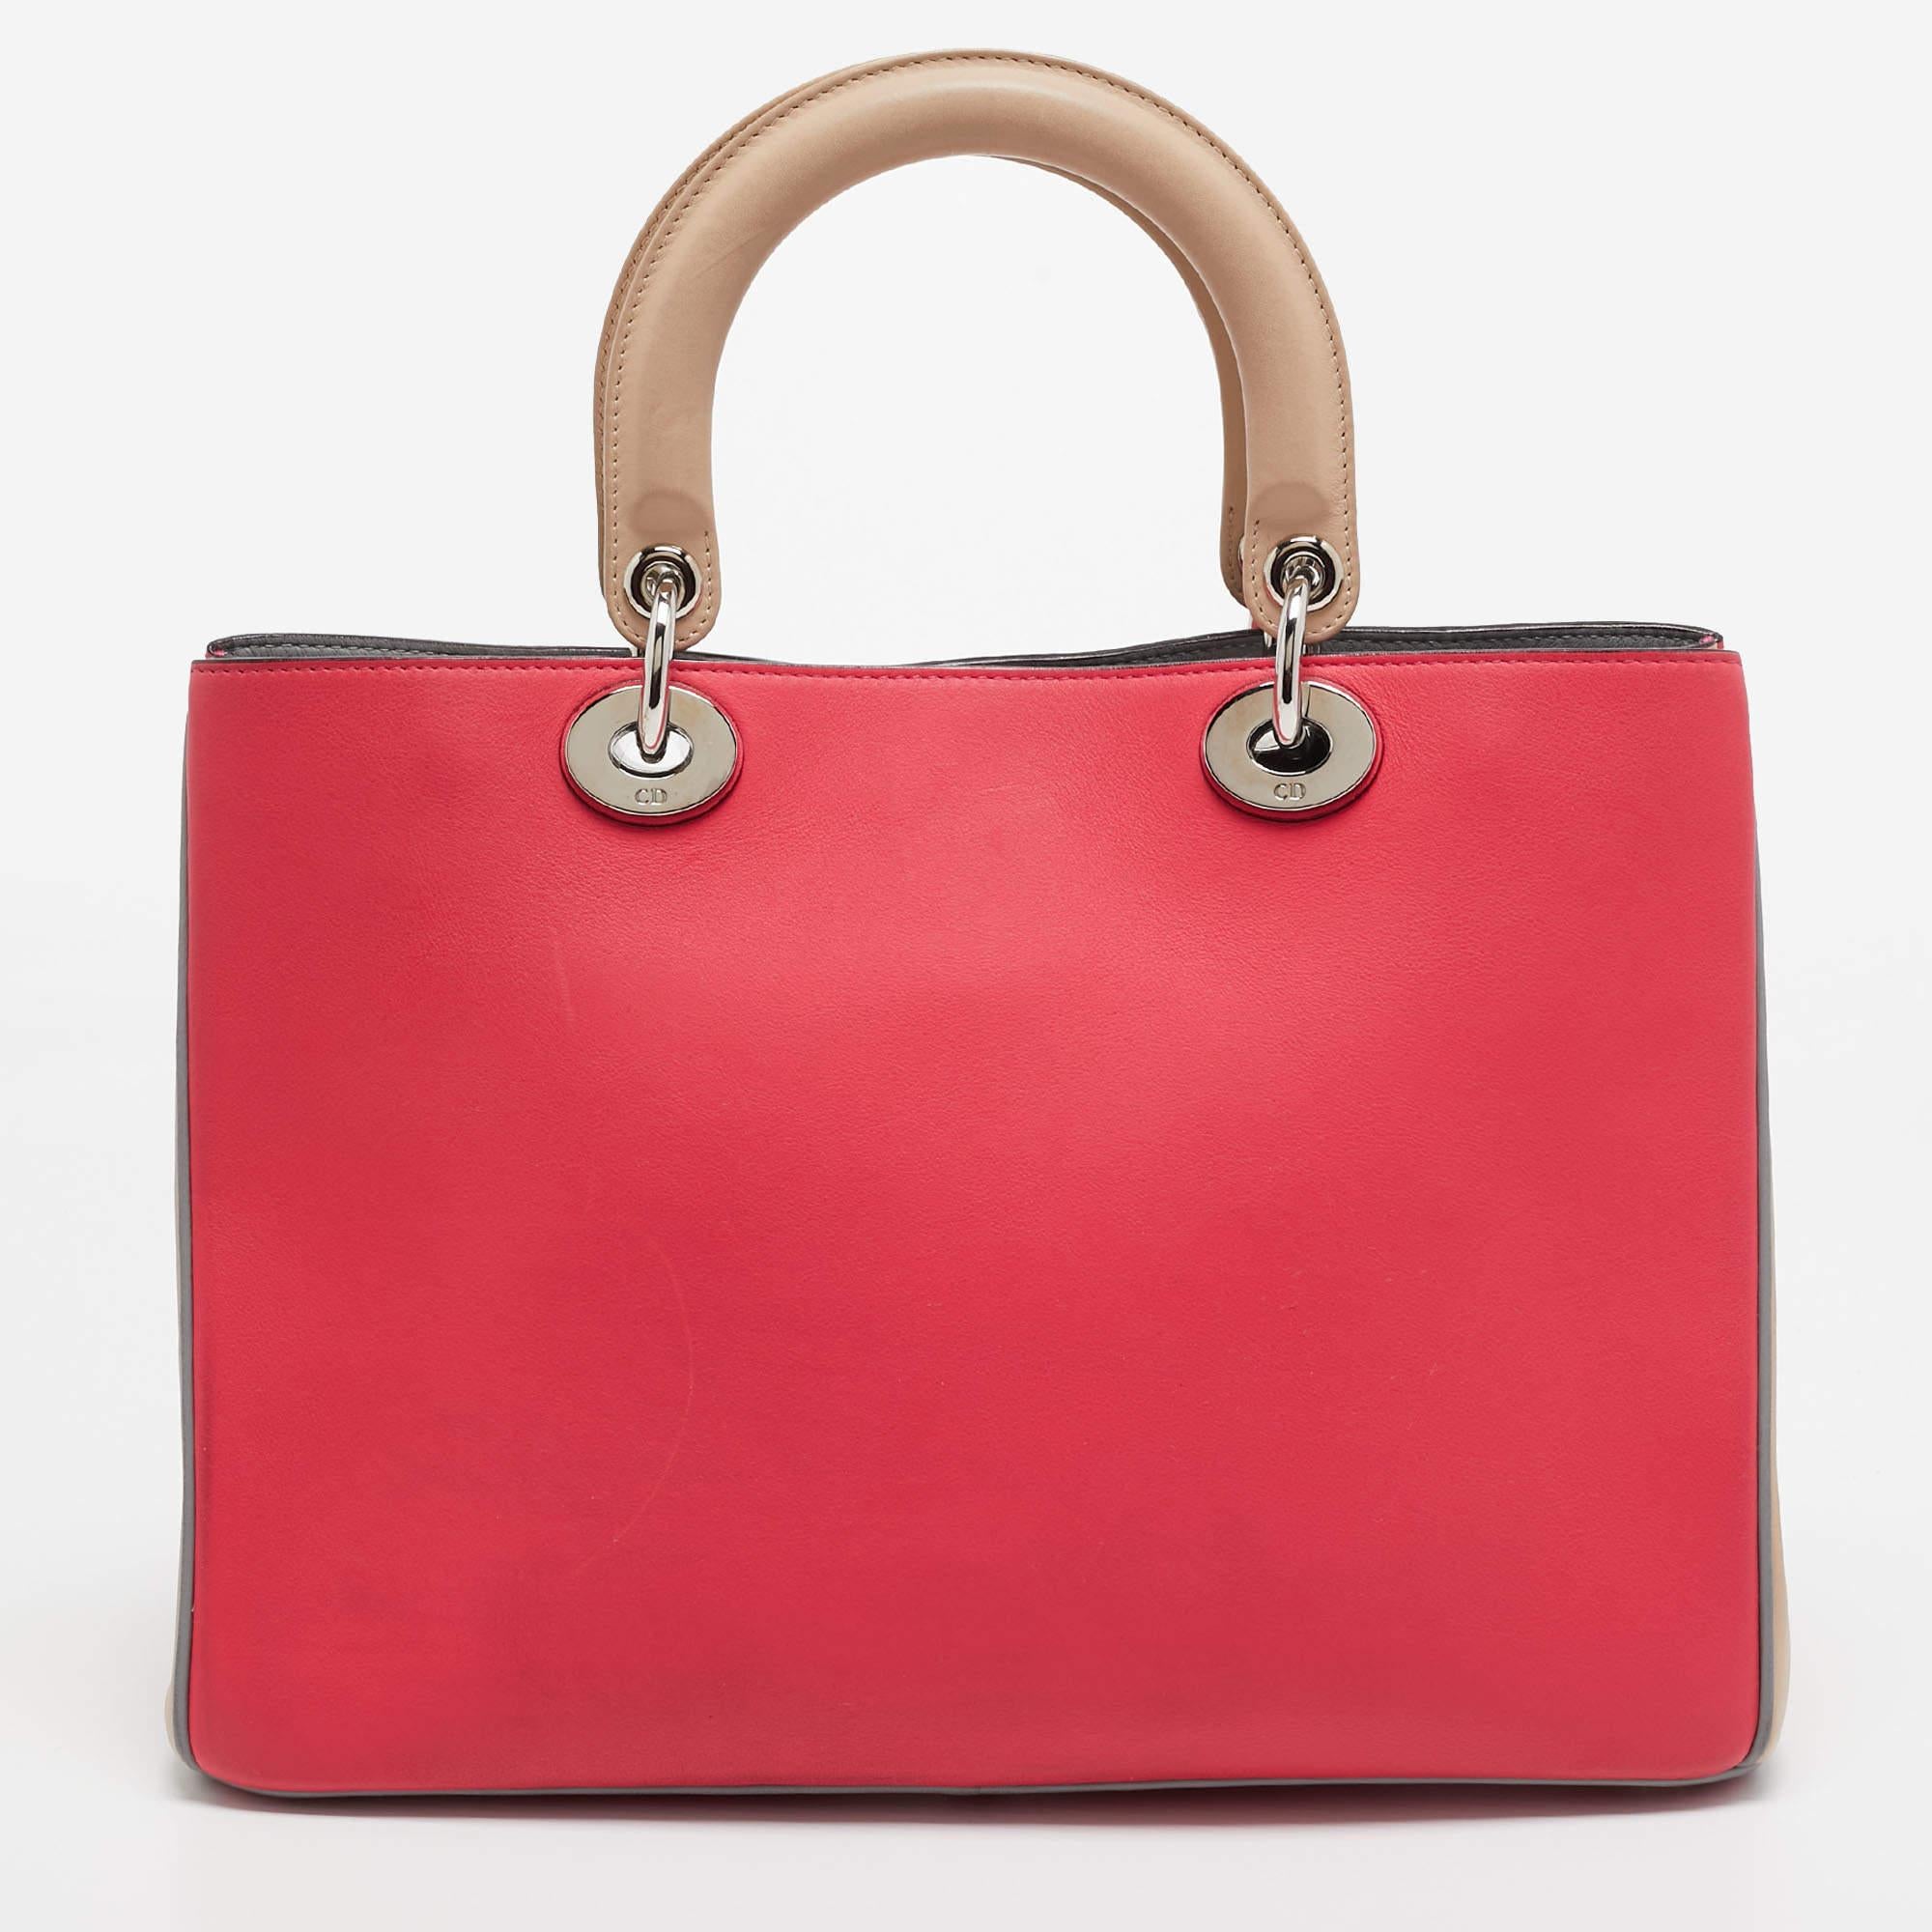 Dior s'assure que vous disposez d'un merveilleux accessoire pour vous accompagner au quotidien avec ce sac bien conçu. Il a un look caractéristique et une taille pratique.

Comprend : Pochette d'origine, carte d'authenticité, sangle amovible

